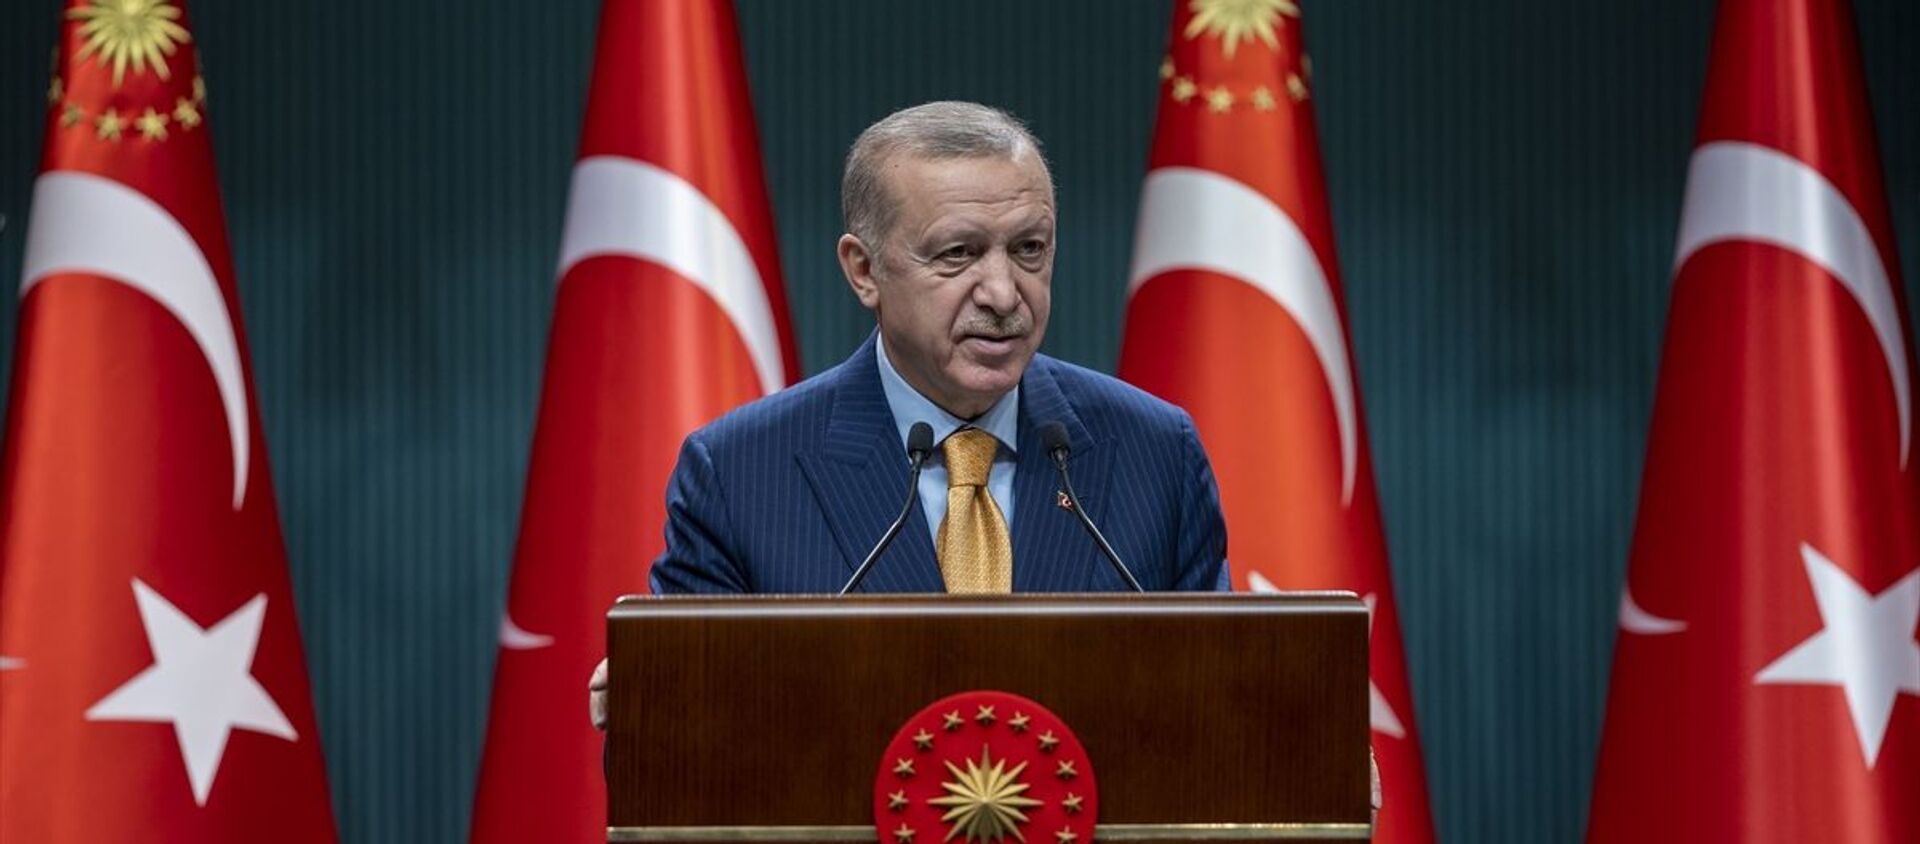 Türkiye Cumhurbaşkanı Recep Tayyip Erdoğan, Cumhurbaşkanlığı Kabine Toplantısı'nın ardından açıklamalarda bulundu. - Sputnik Türkiye, 1920, 06.03.2021